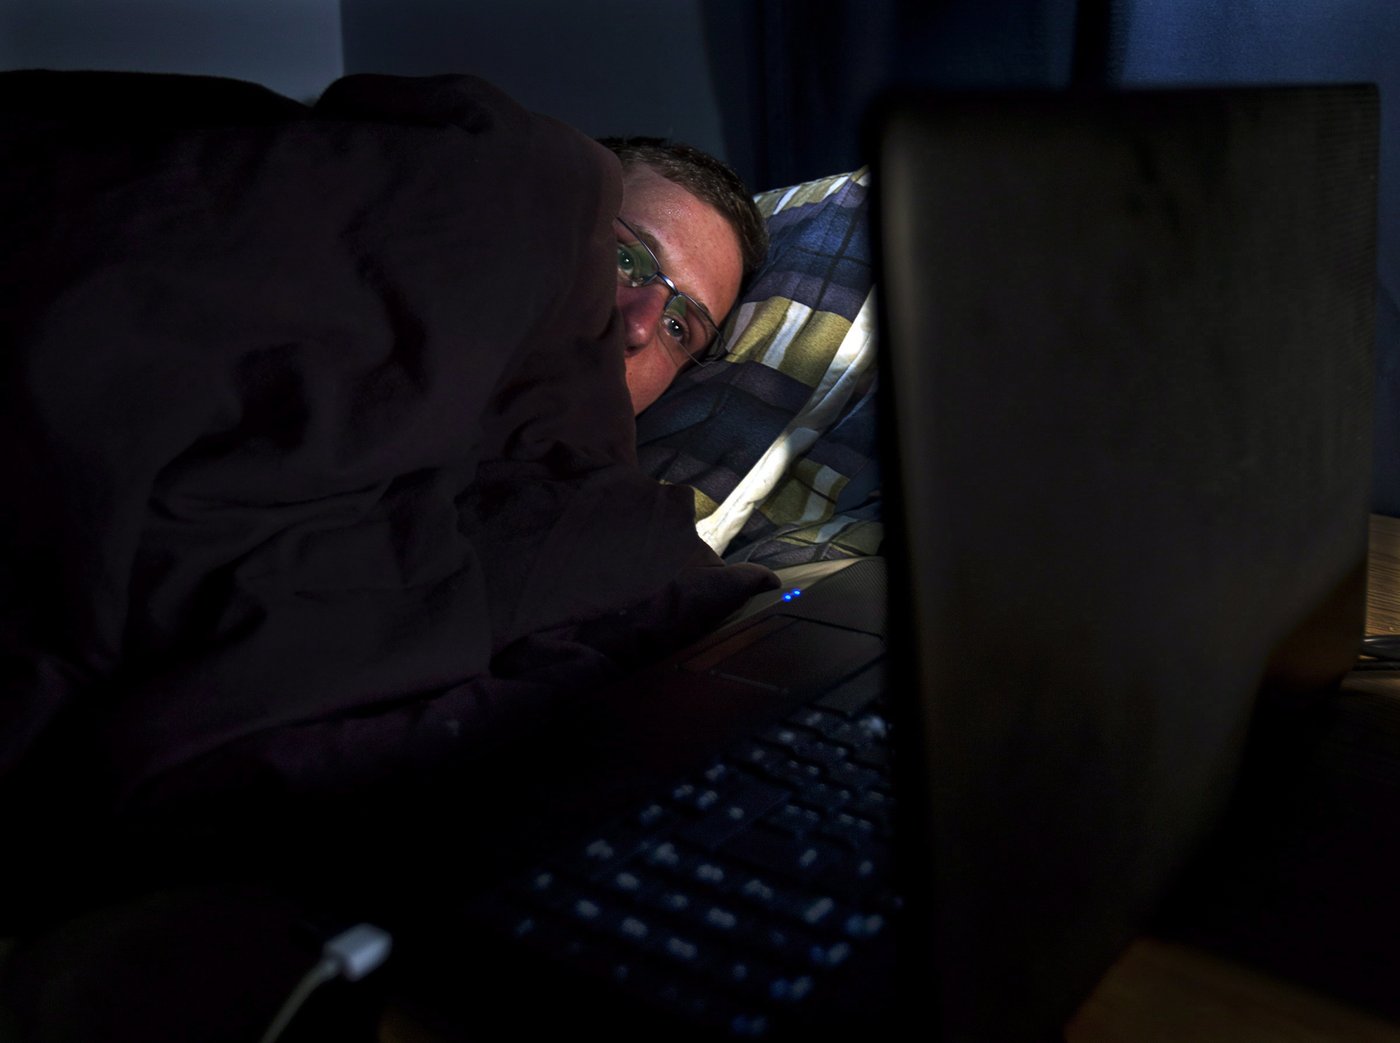 Horaire atypique et hypervigilance: certains métiers sont plus propices à l’insomnie